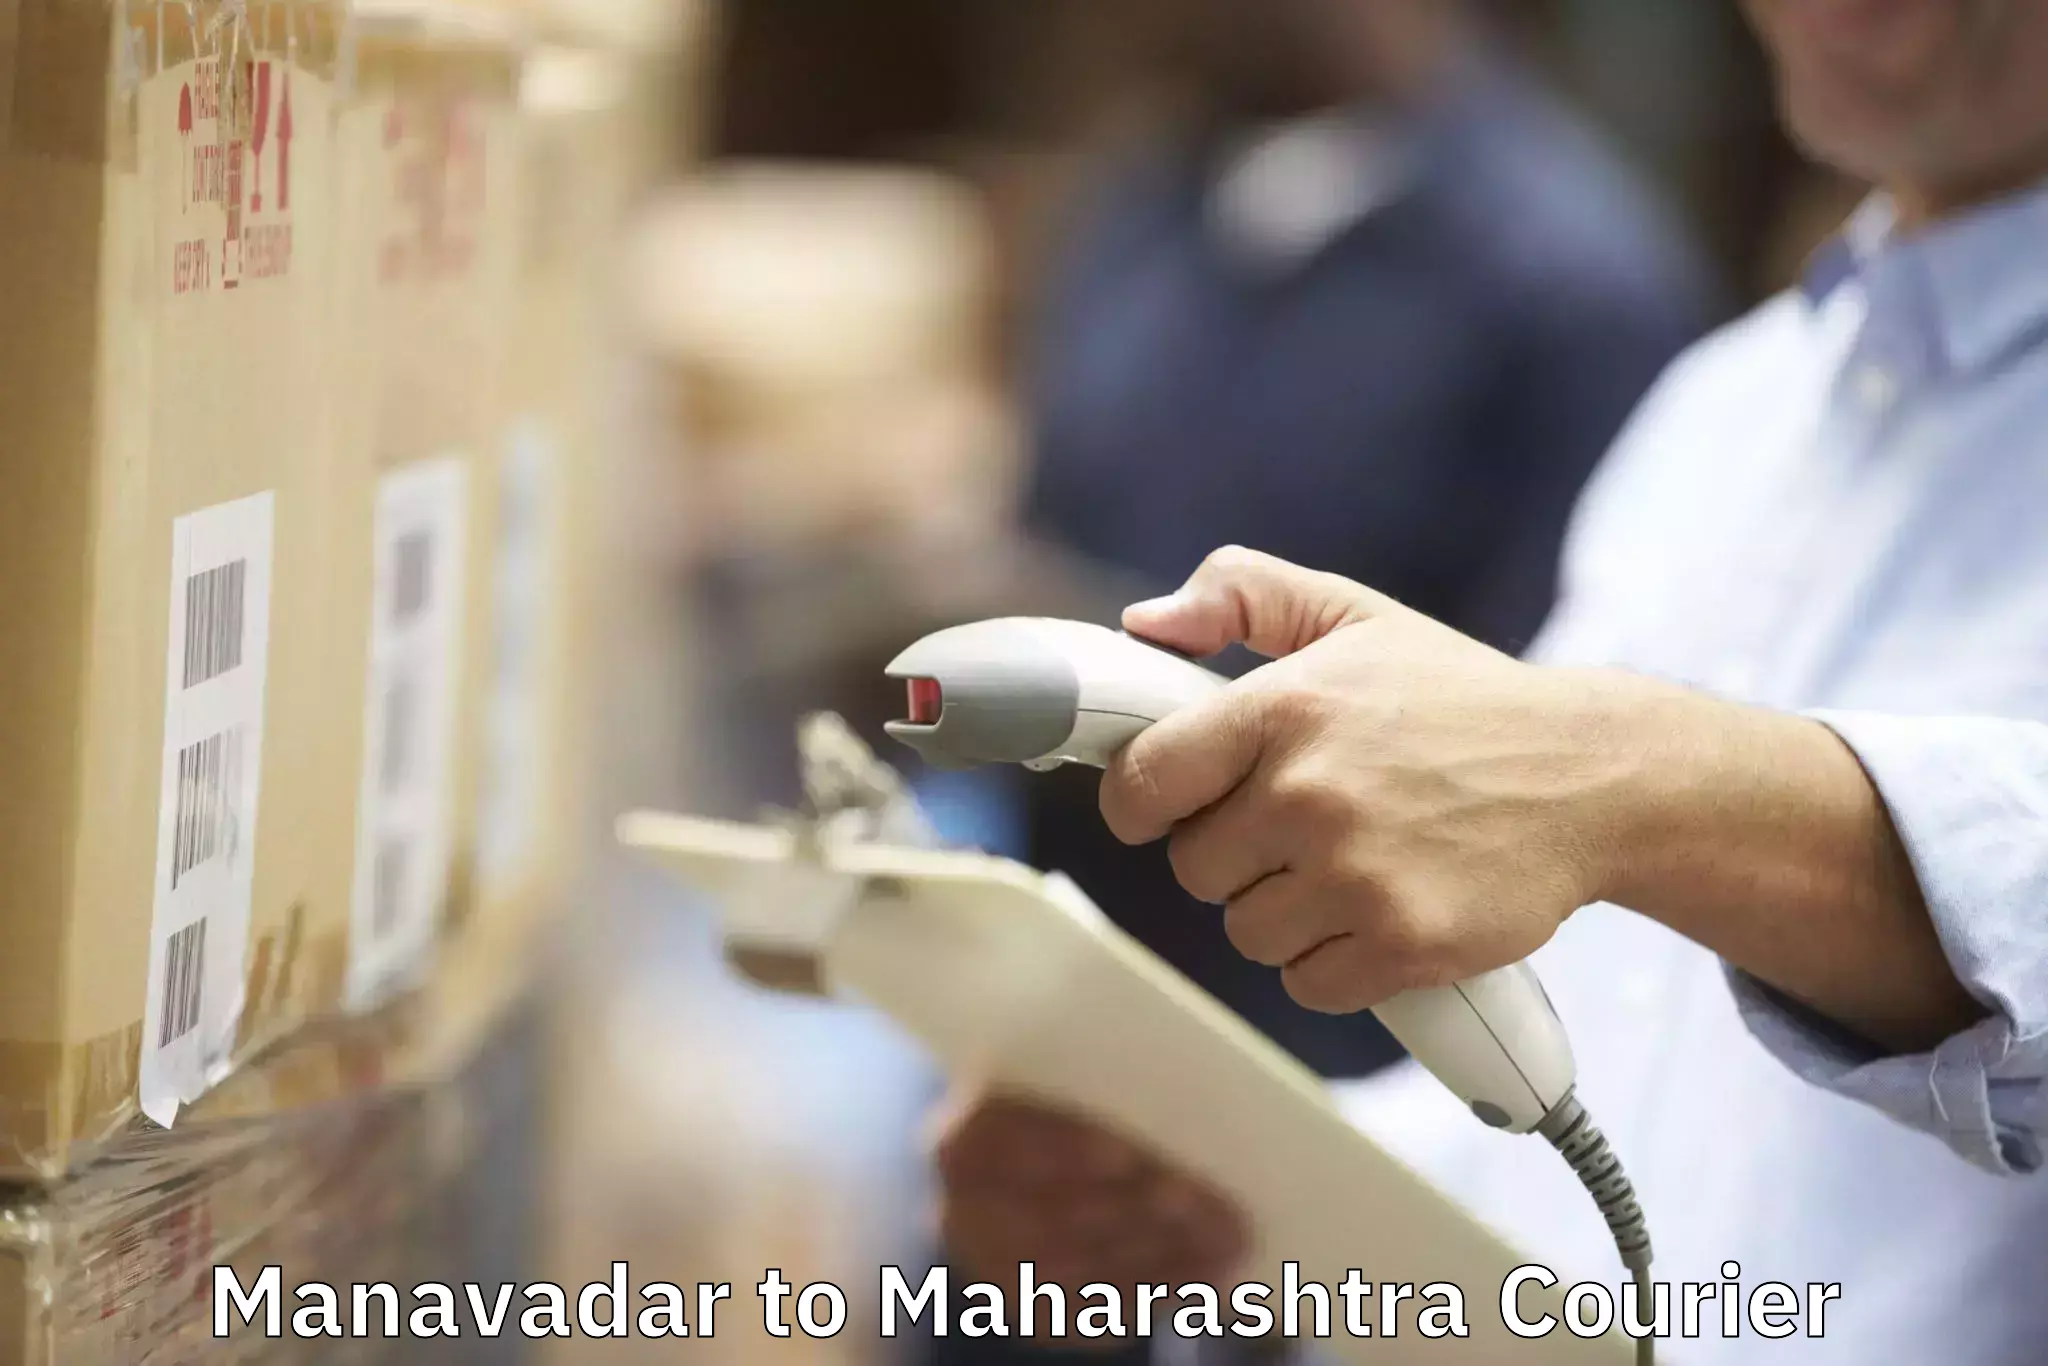 Quality moving company Manavadar to Maharashtra